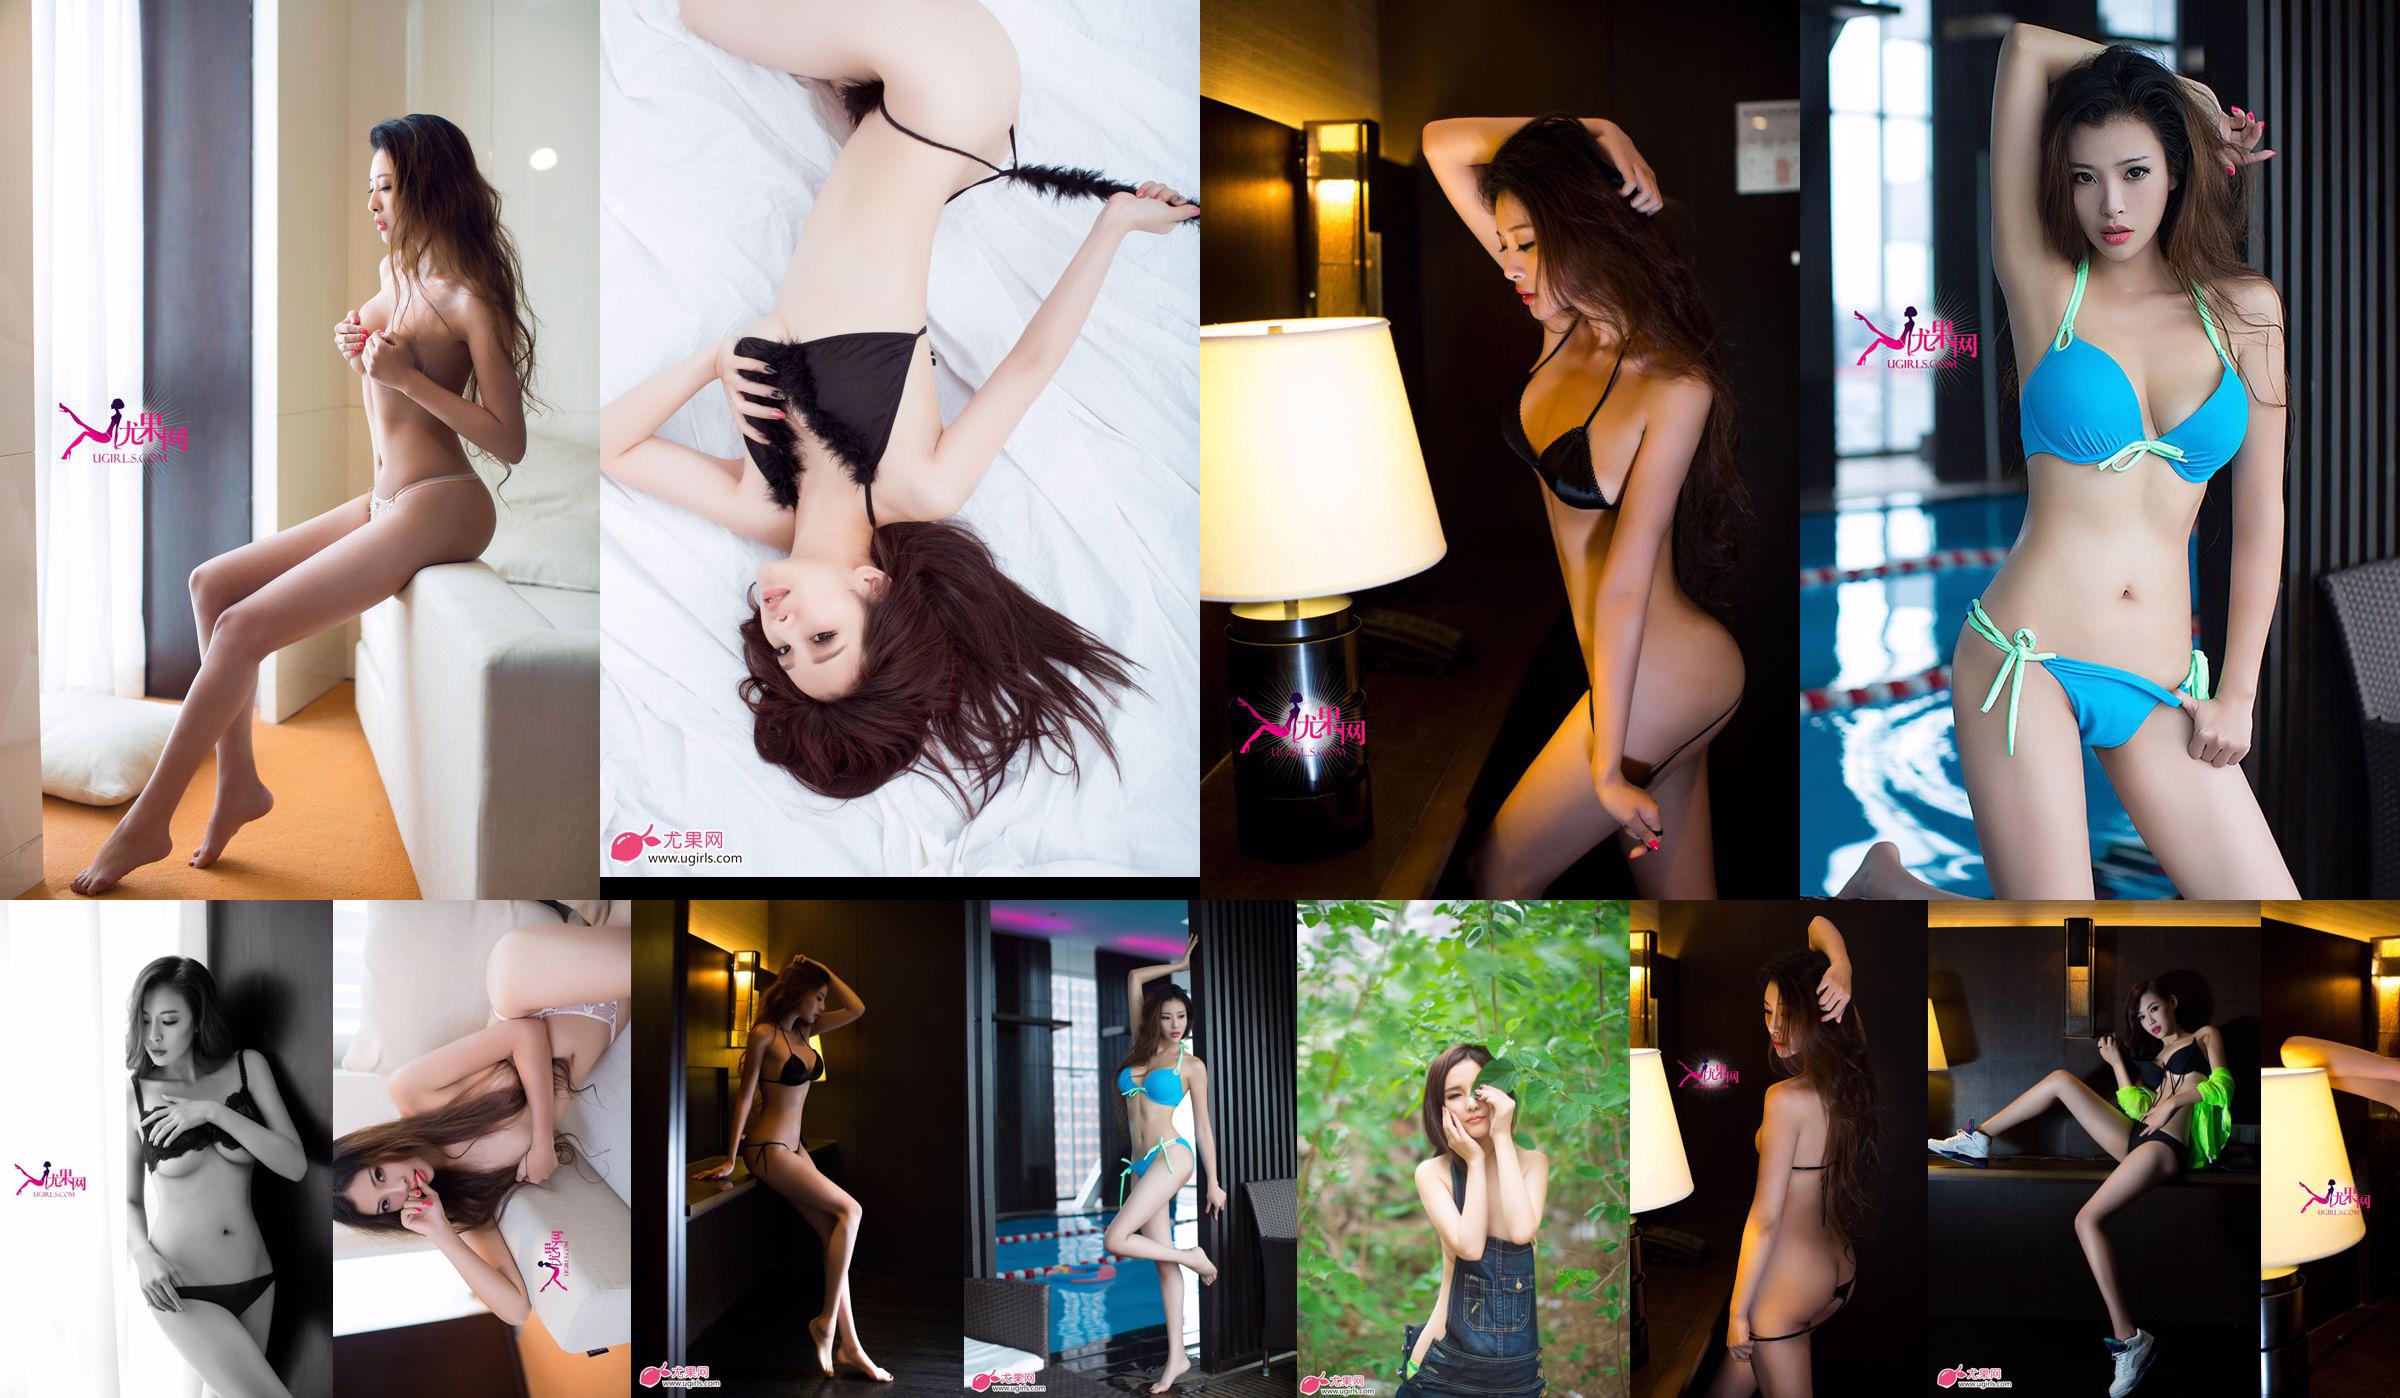 [Ugirls] E043 Langbenig model Zeng Chen "Summer Sexy" No.810da3 Pagina 17